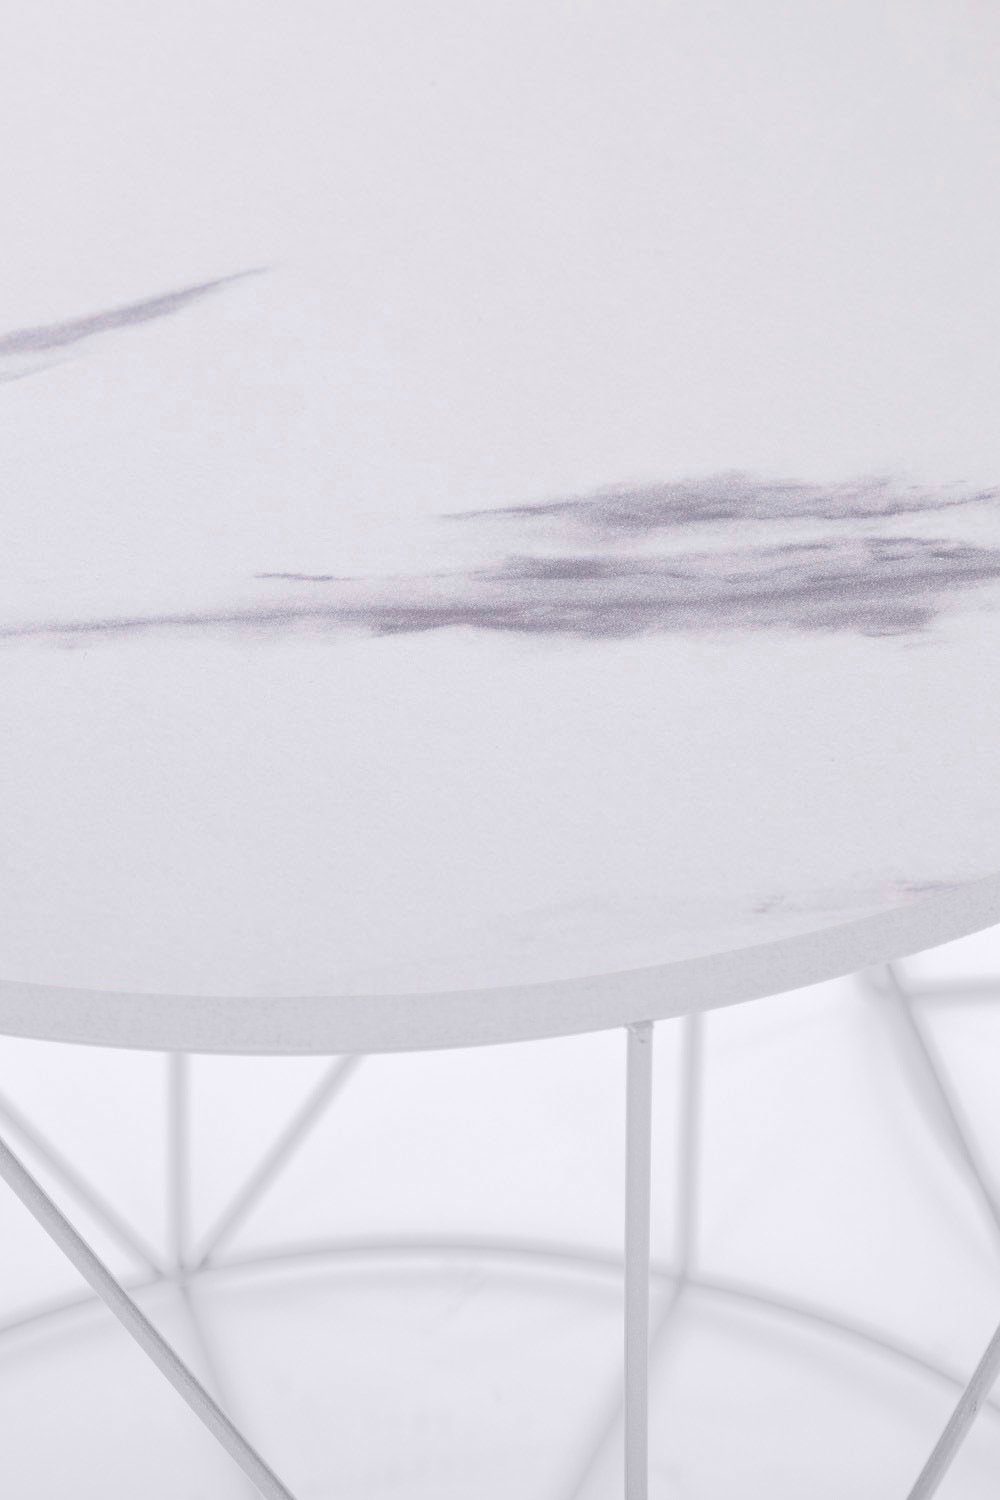 | Weiß/Marmor Design | Skandinavischem Beistelltisch Weiß Rundini, Platte Flair Gestell, Weiß my im Naturbelassene lackiertem Design